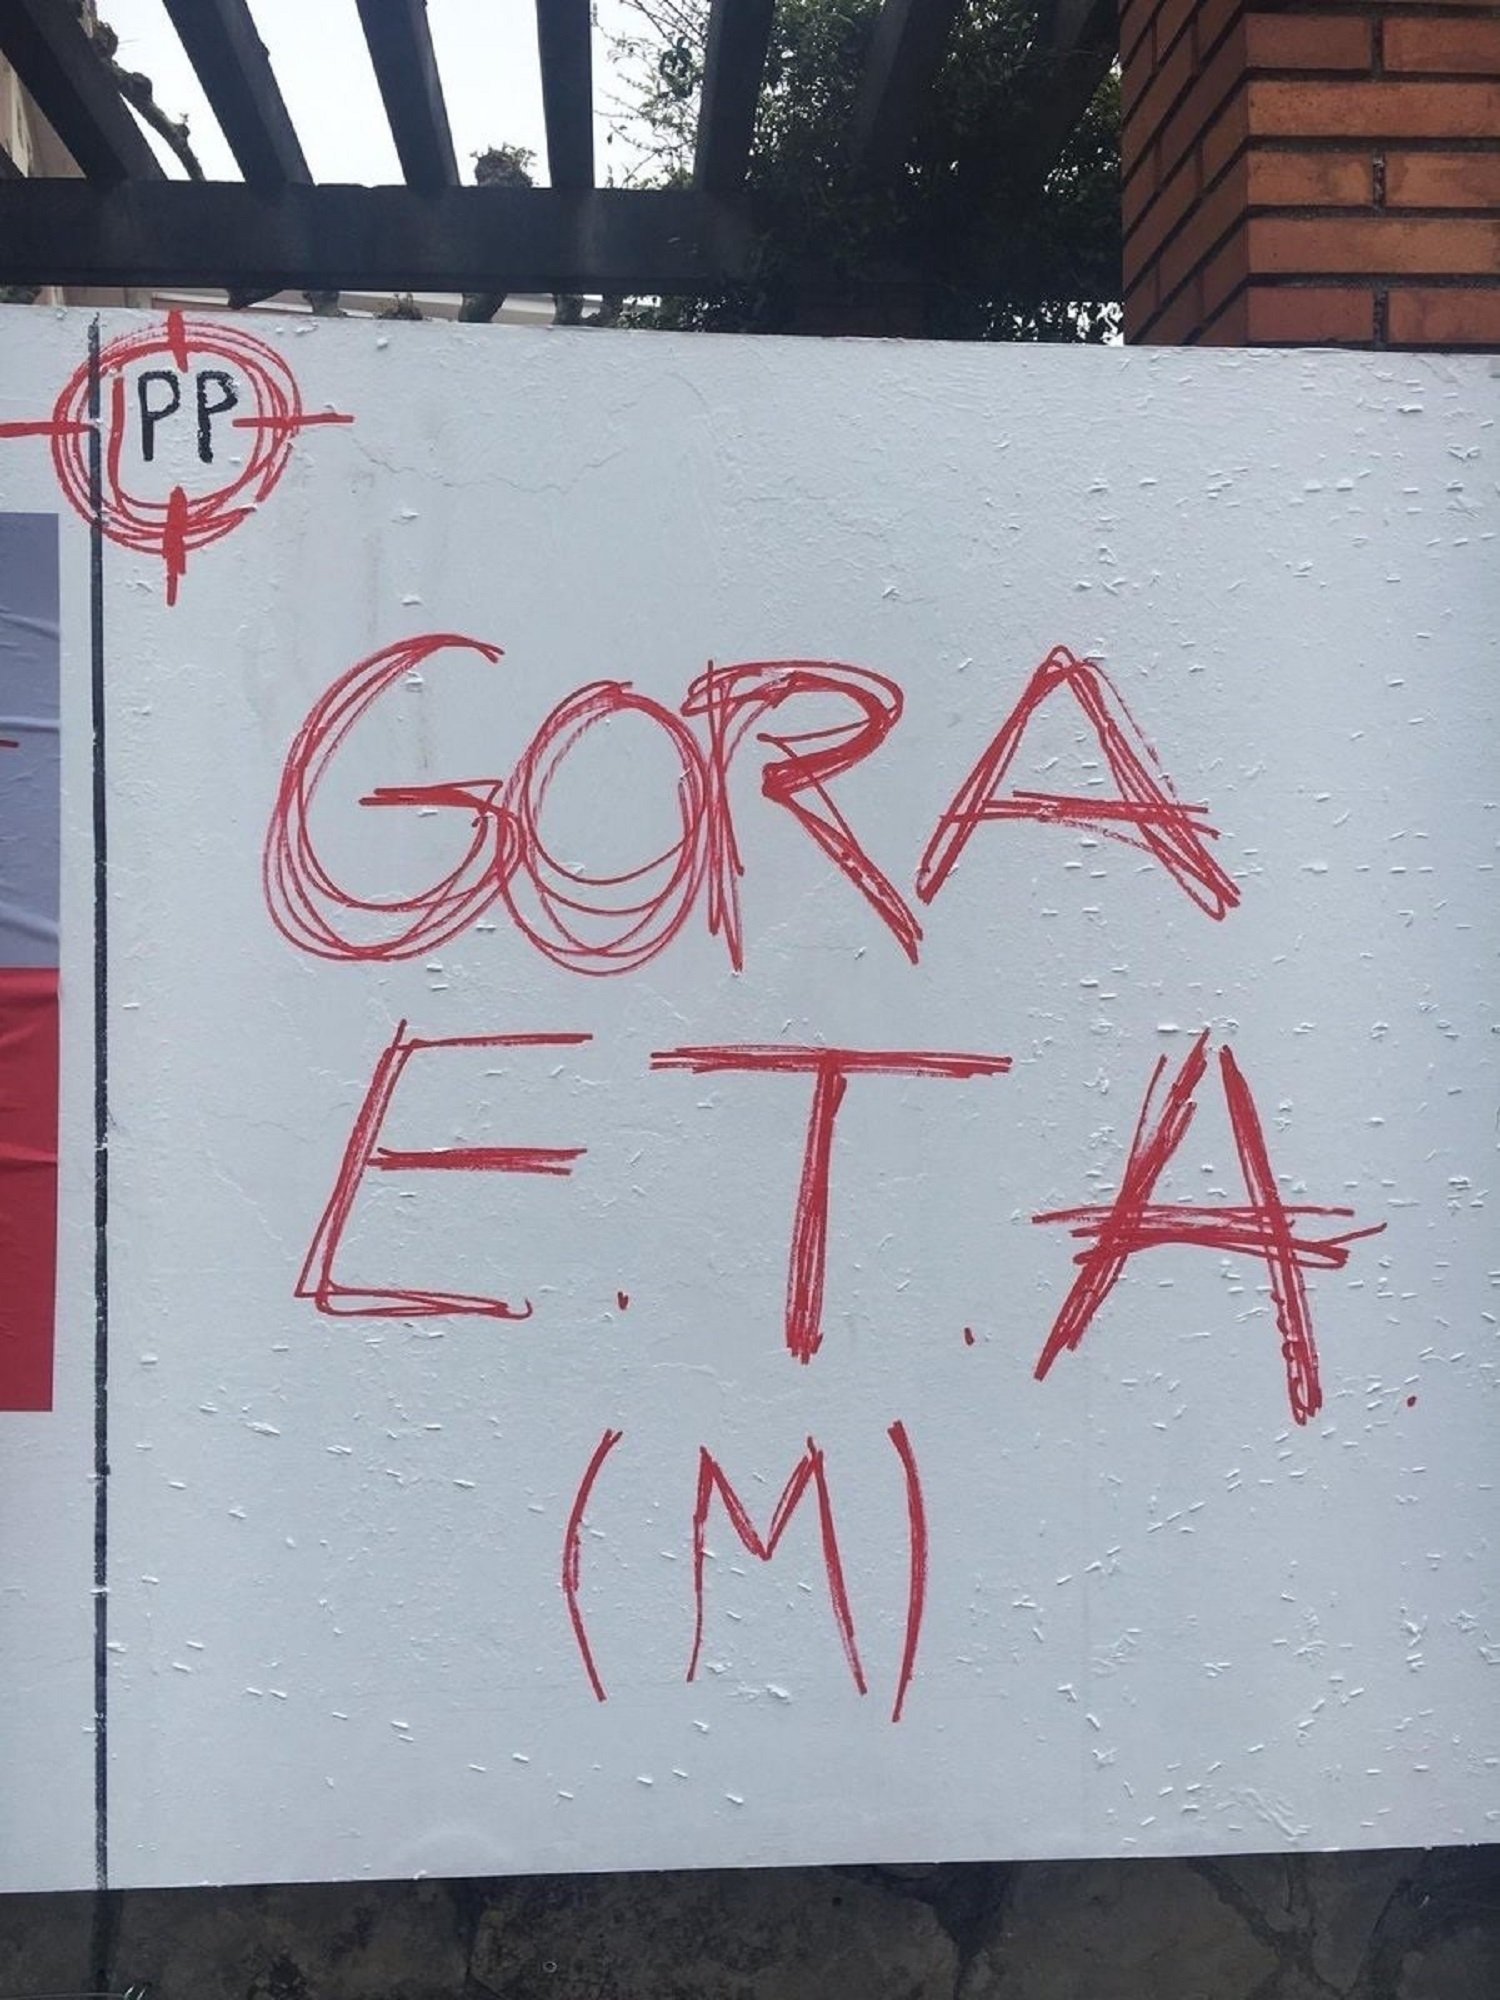 El PP denuncia pintades contra el partit i a favor d'ETA